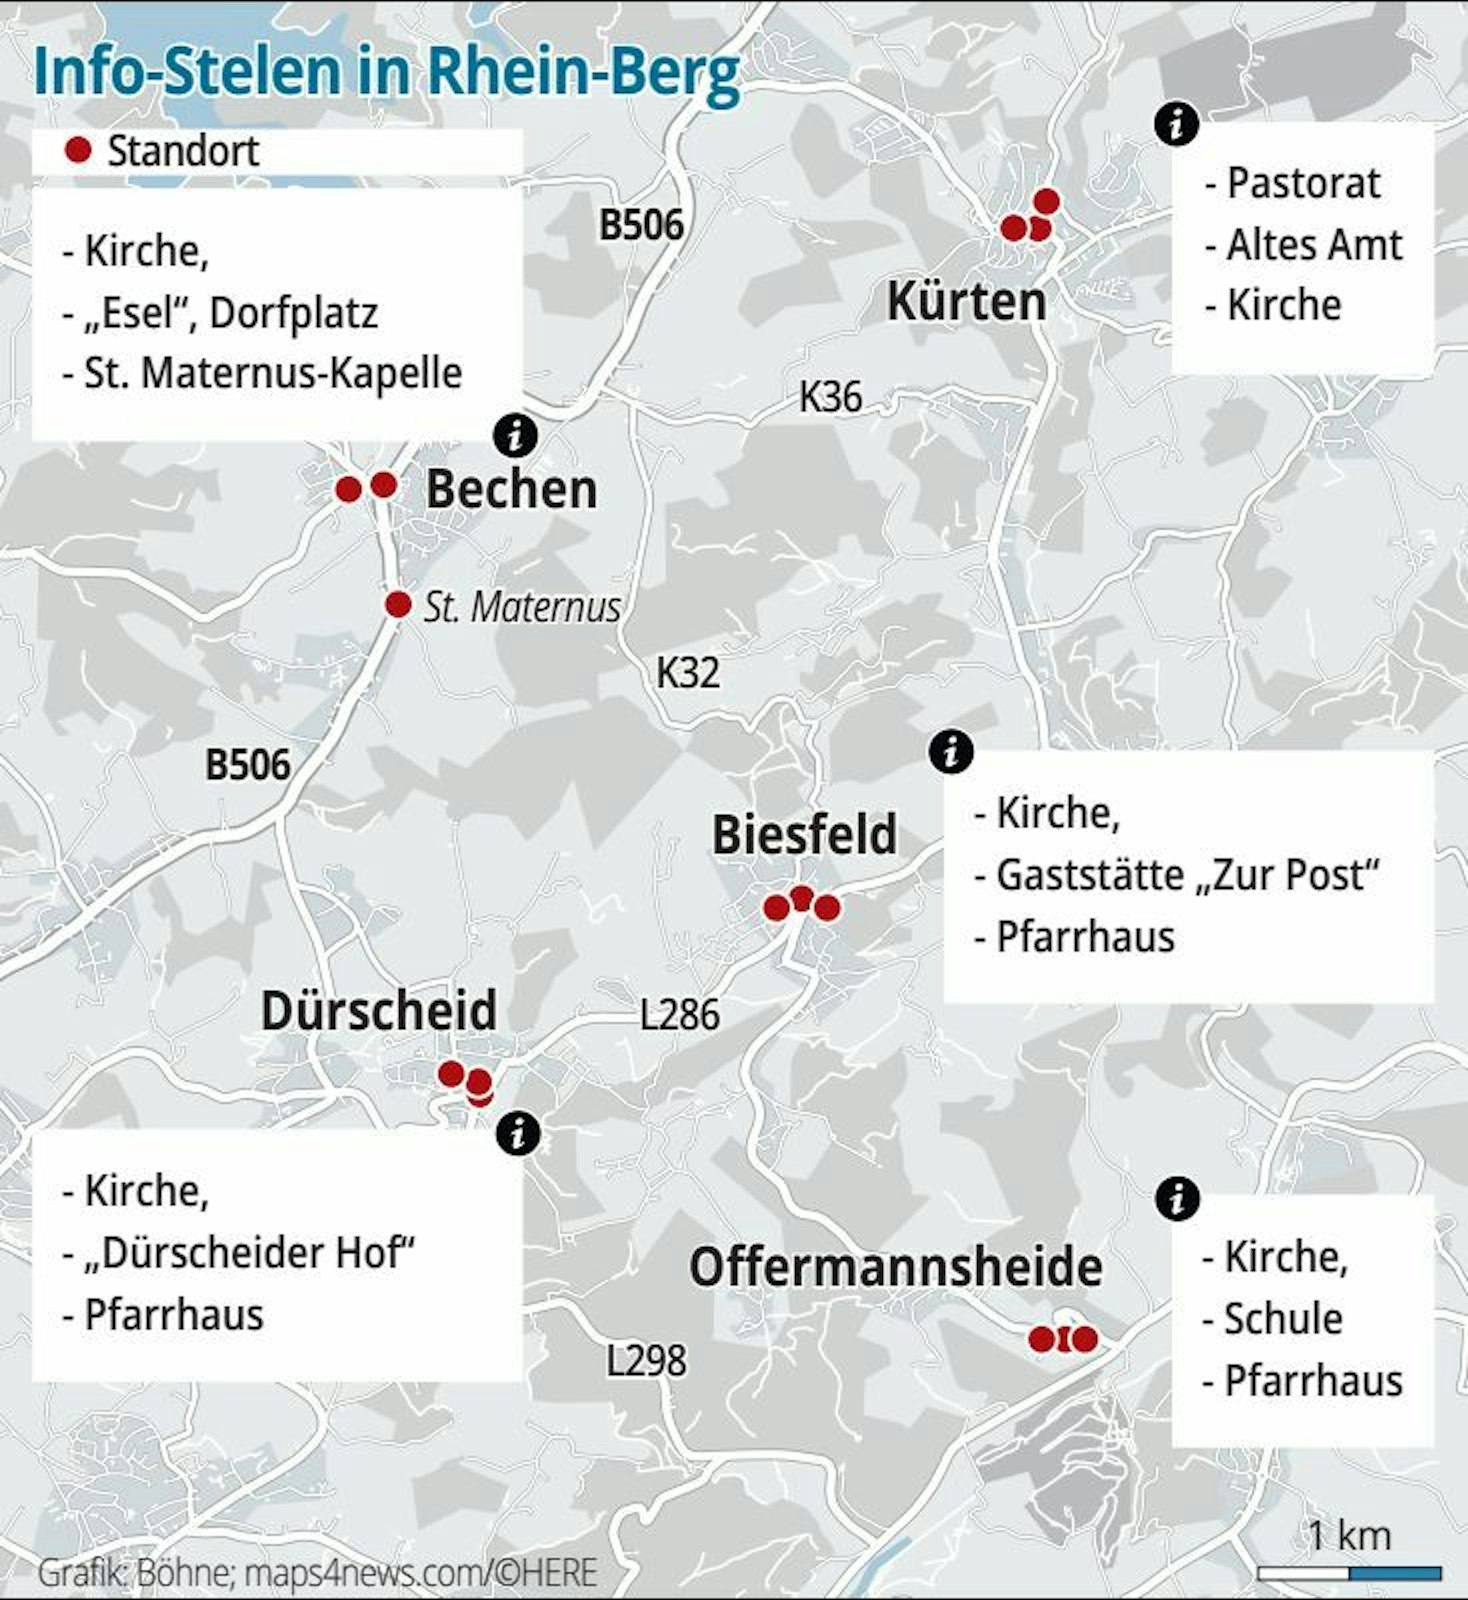 Info-Stelen in Rhein-Berg